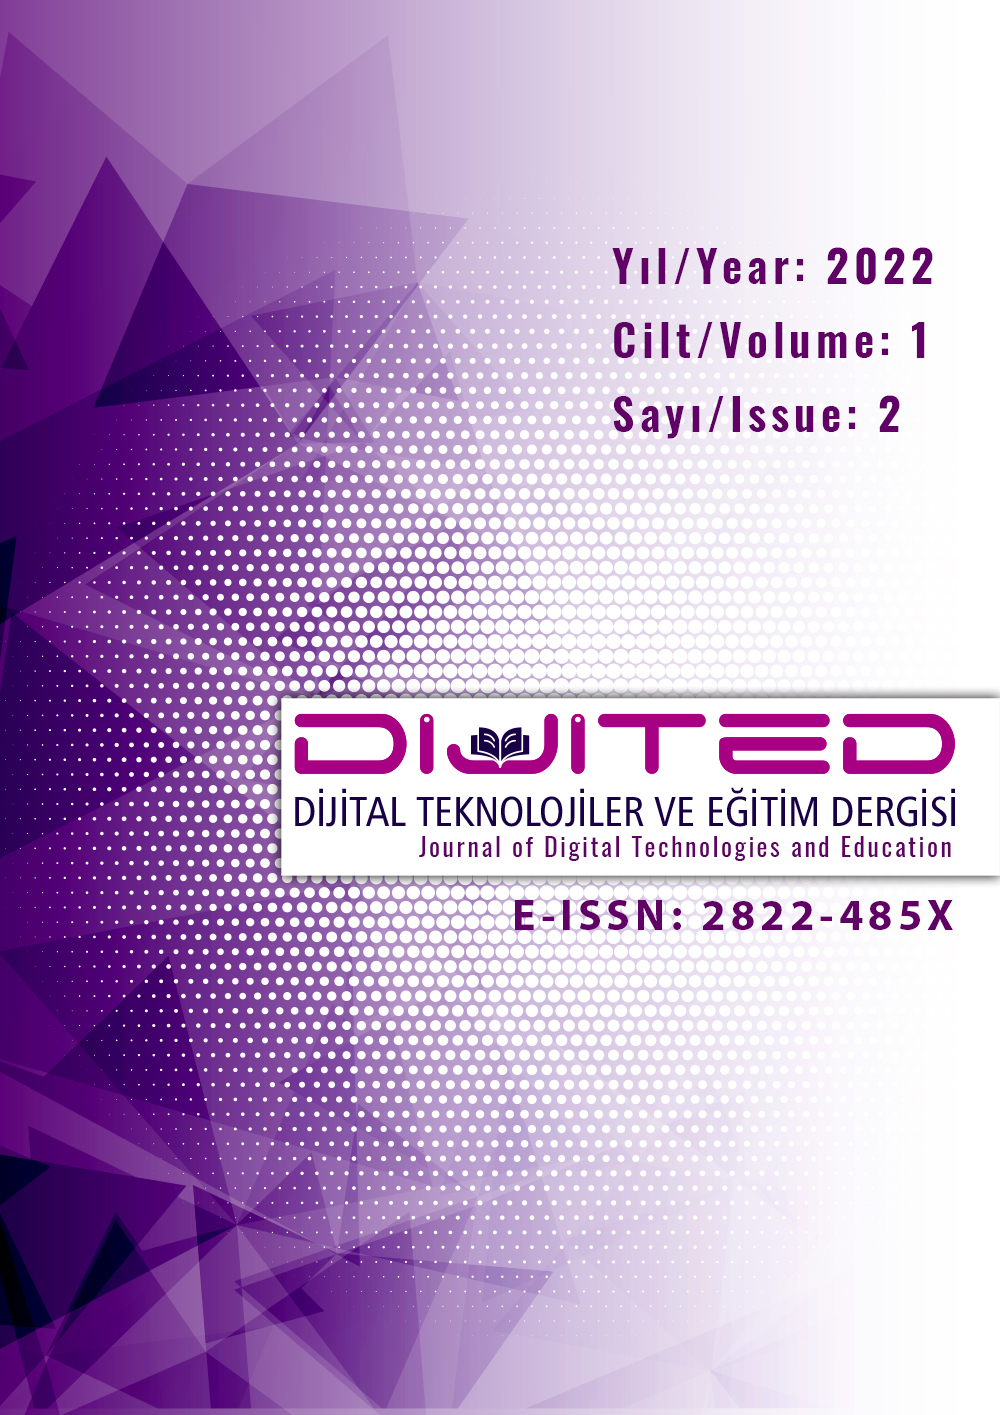 					Cilt 1 Sayı 2 (2022): Dijital Teknolojiler ve Eğitim Dergisi Gör
				